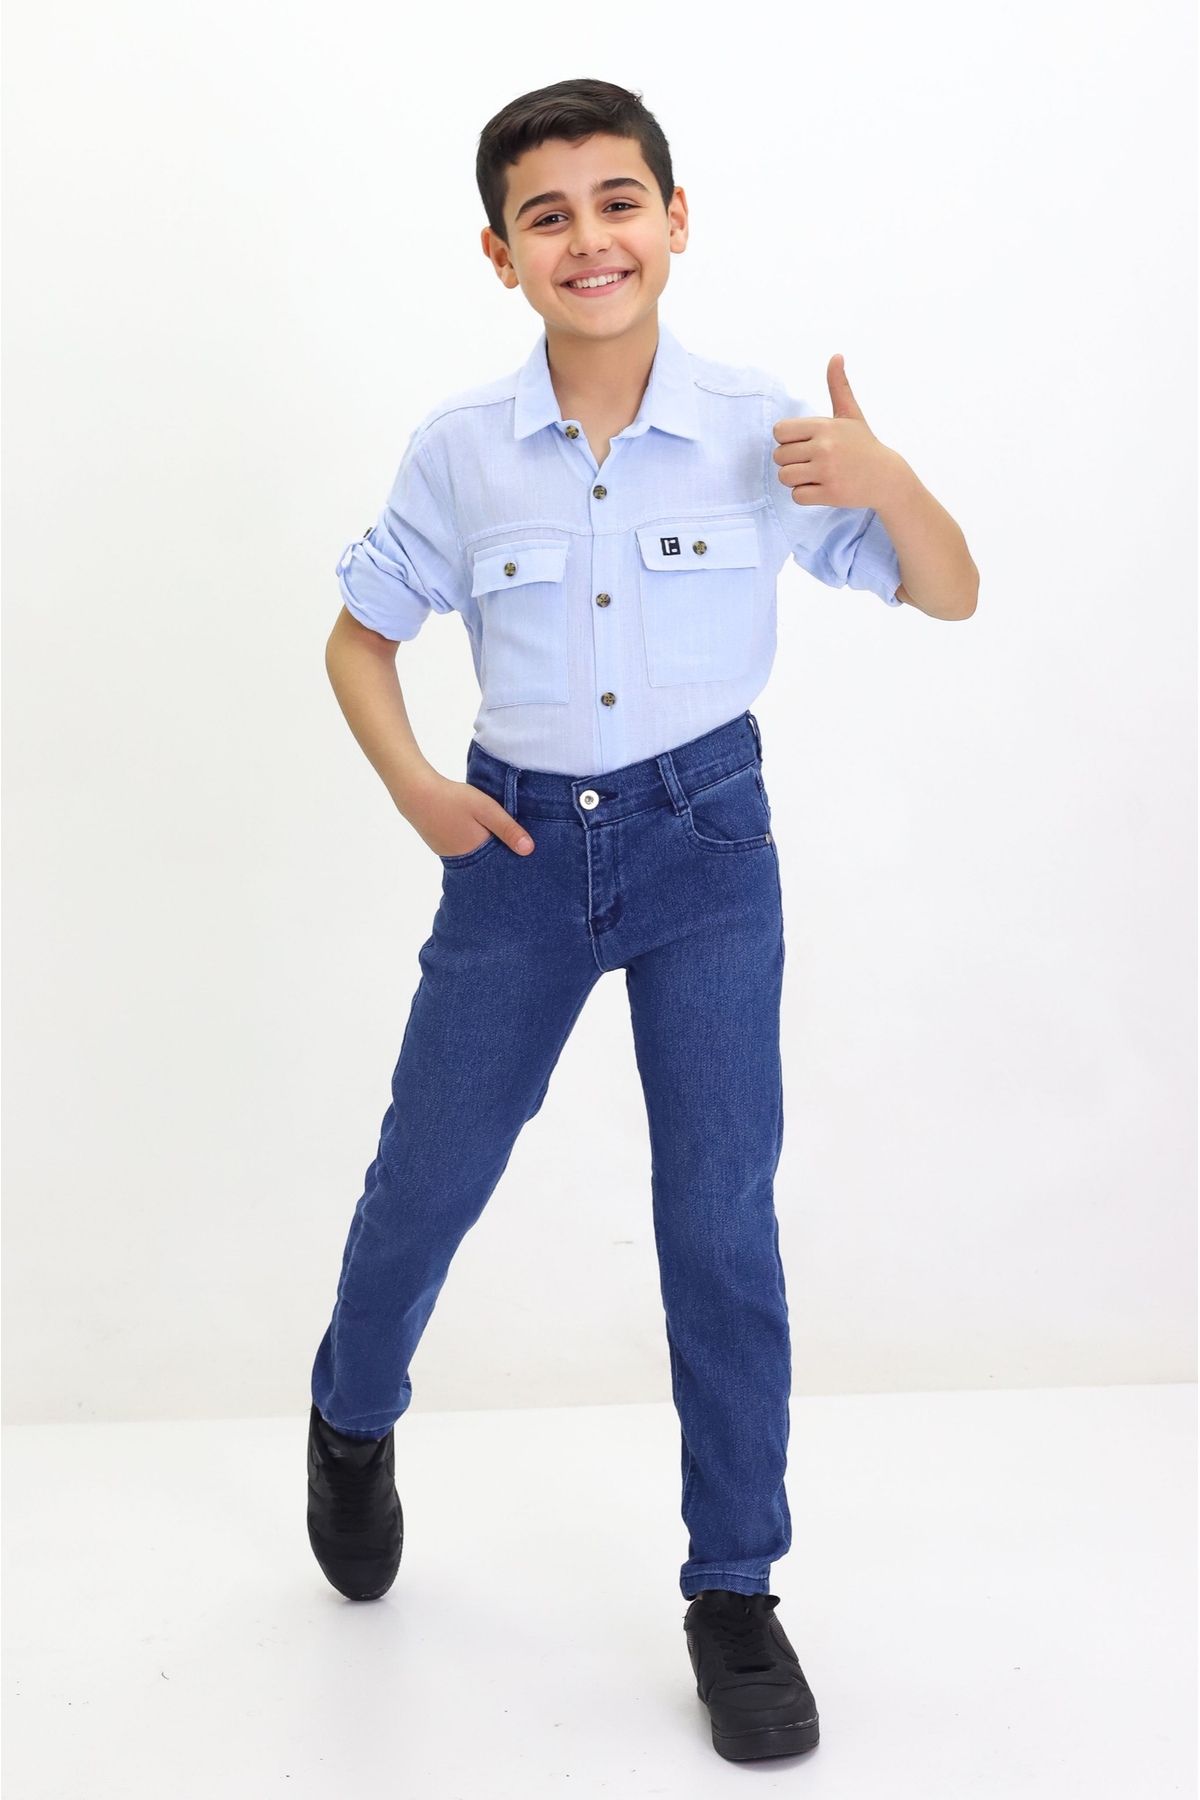 GZT TEKSTİL Erkek Çocuk Likralı Kot Jeans Pantolon Düz Model 6-12 Yaş